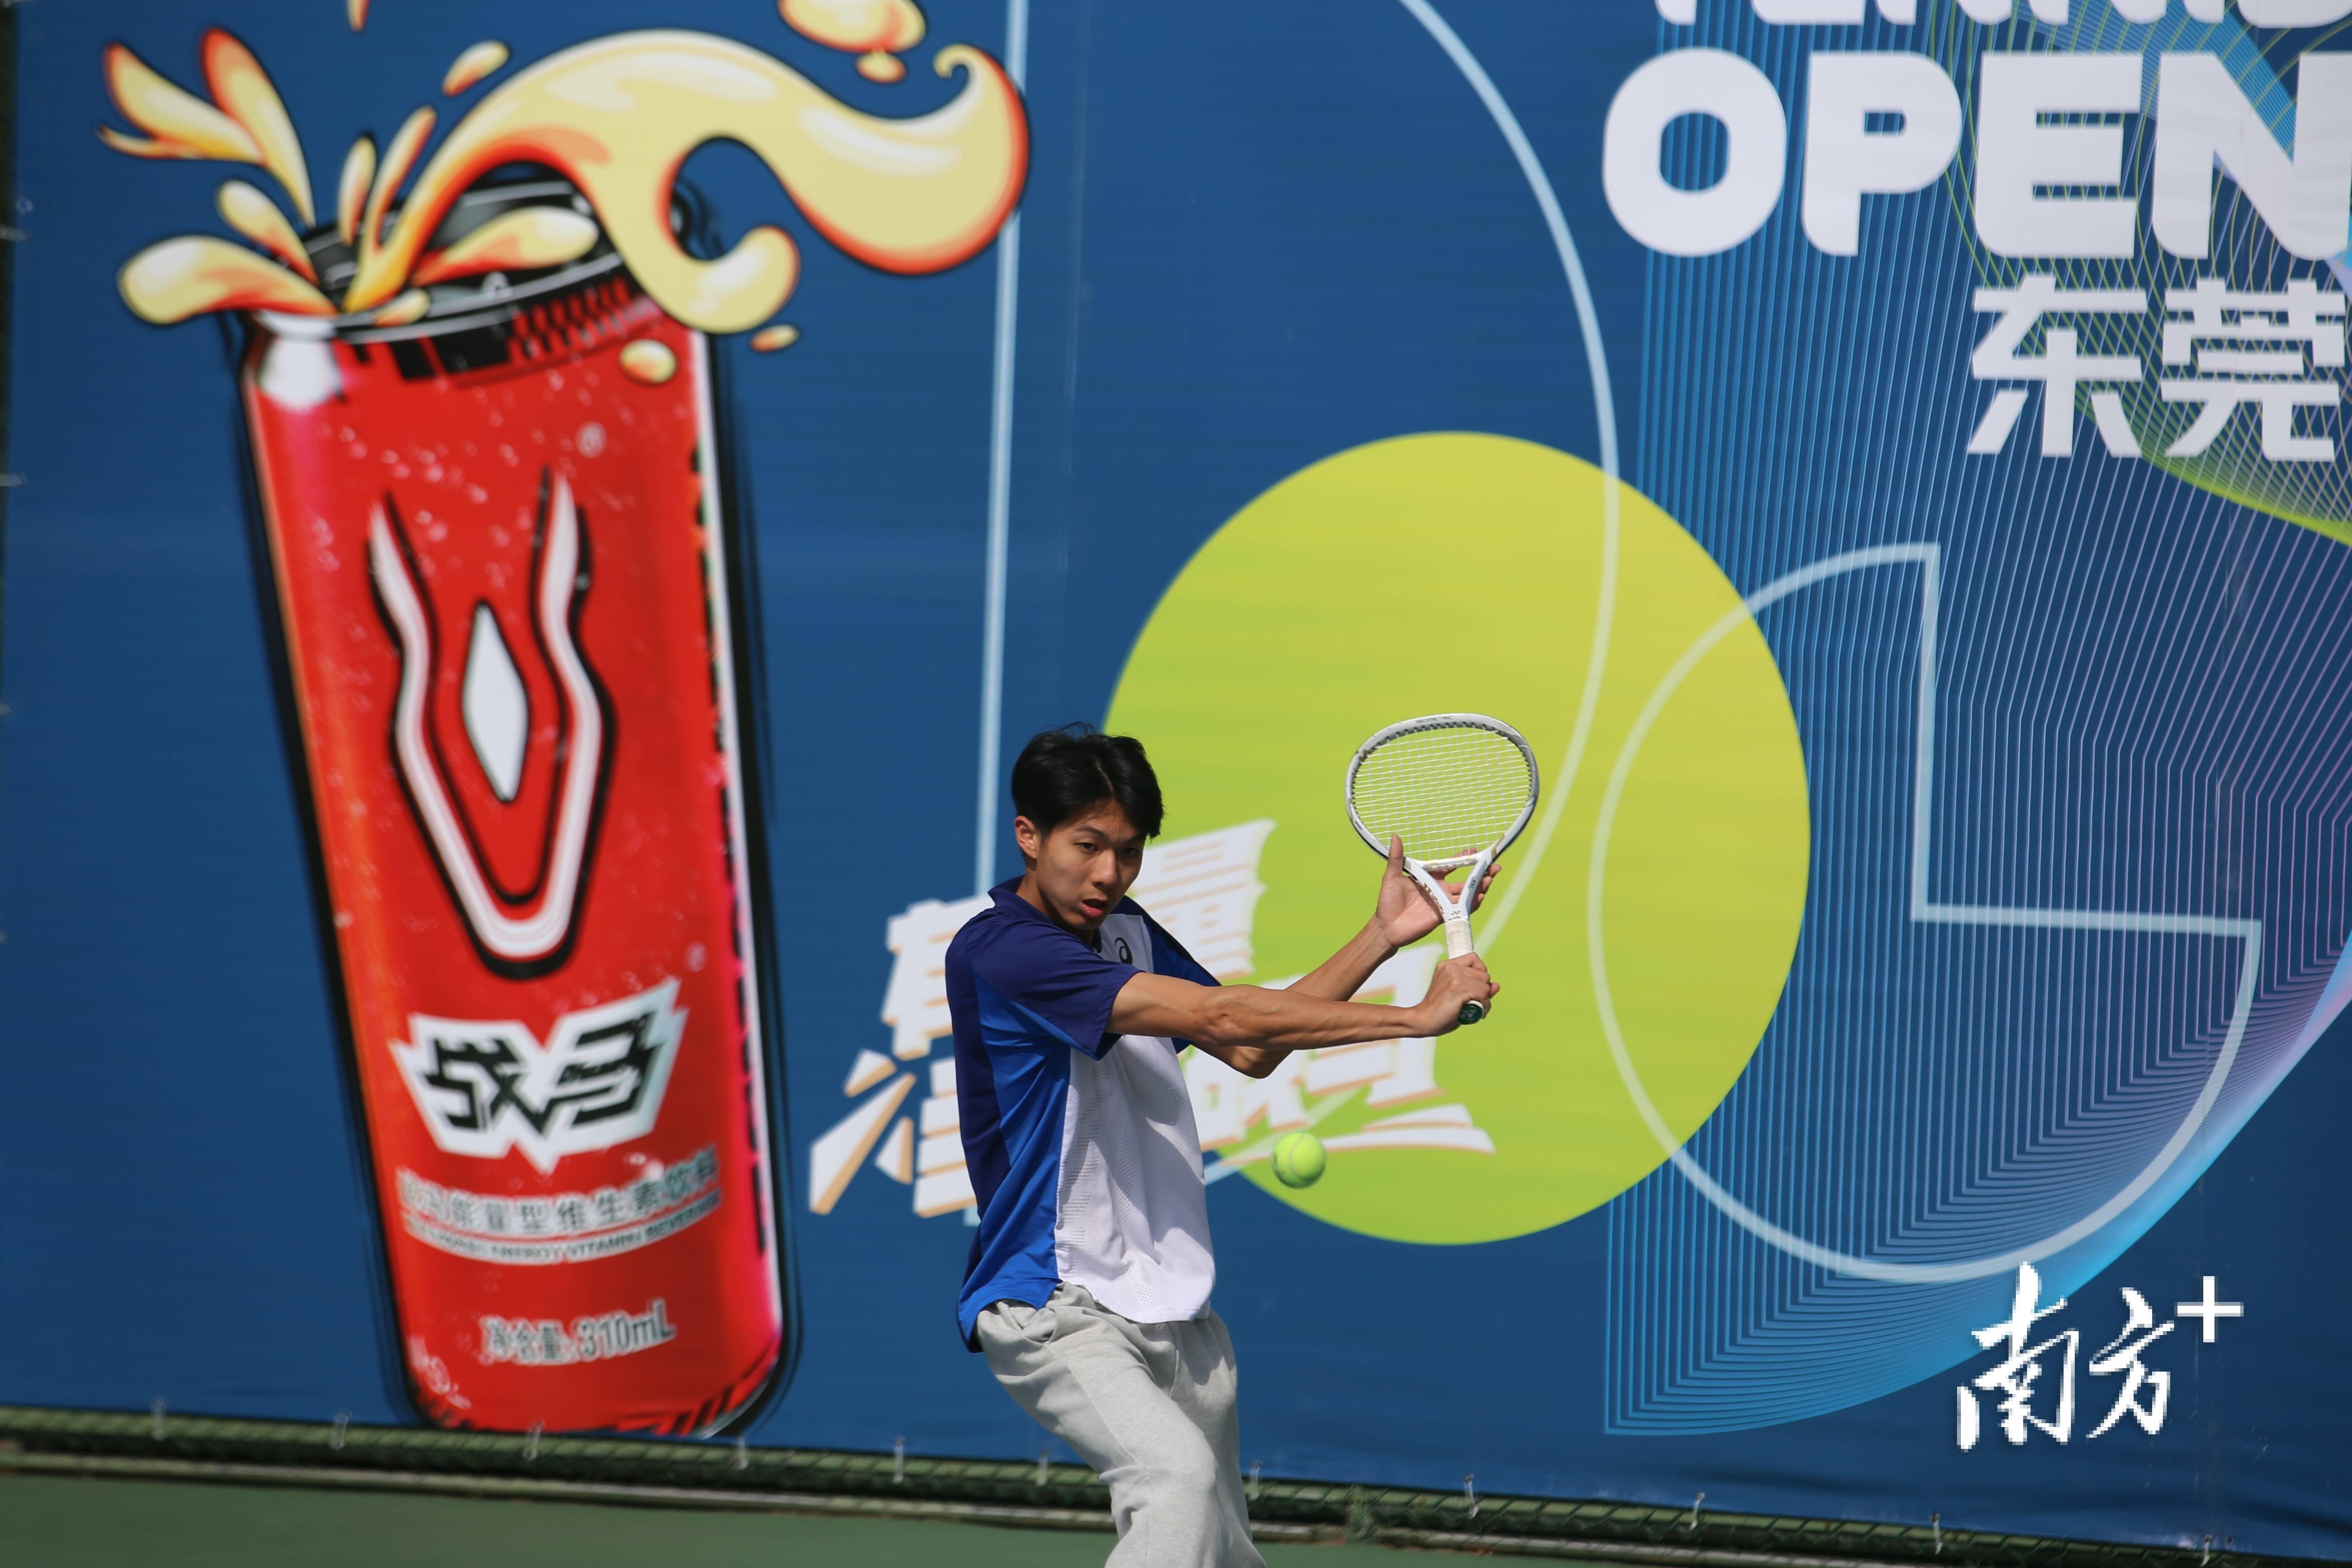 【168sports】“战马杯”东莞市业余网球公开赛举行